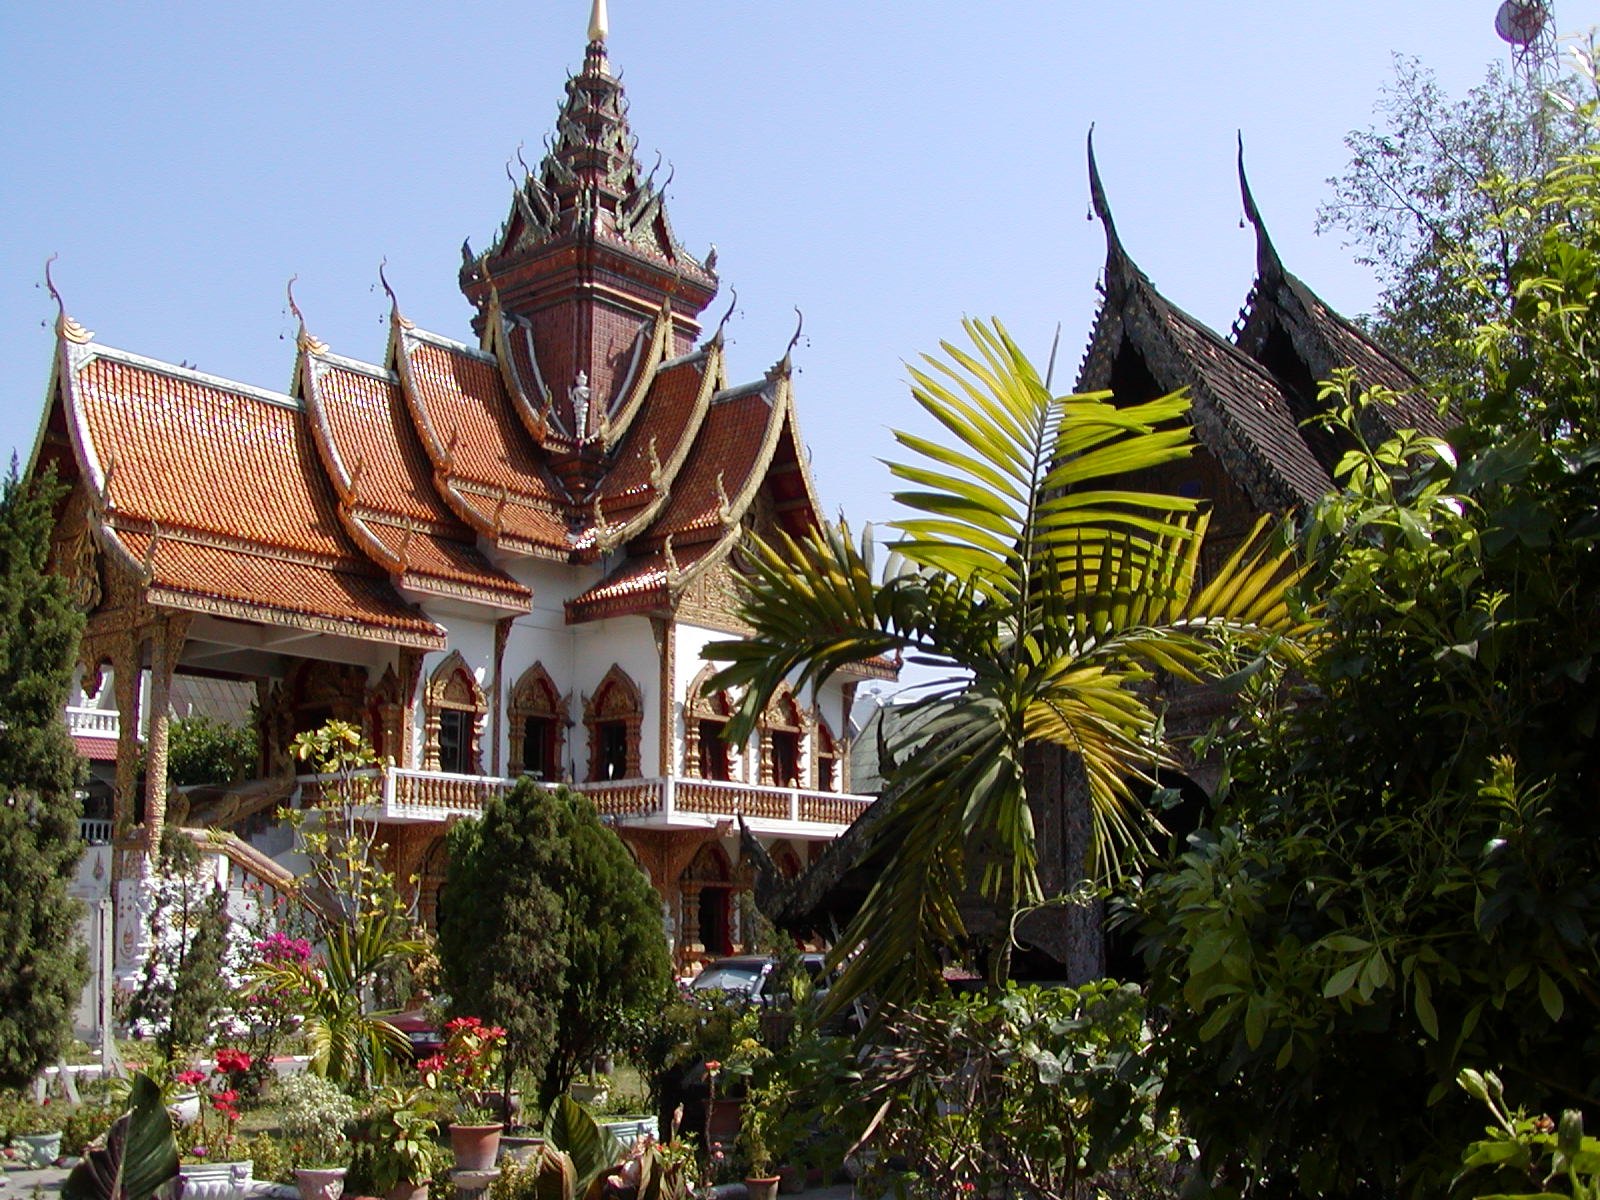 Chiang Mai Temple.JPG